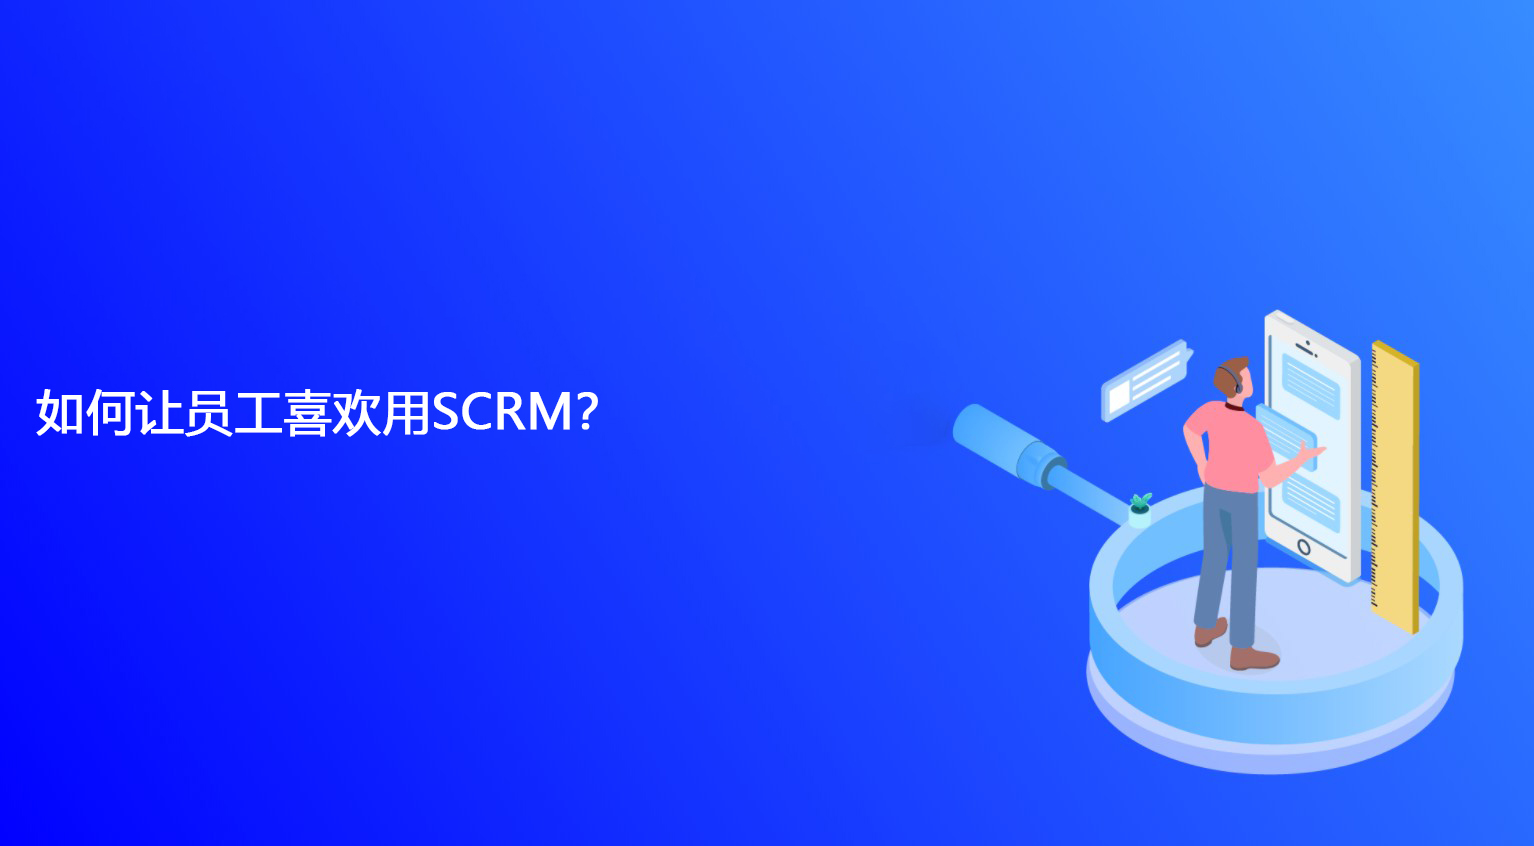 如何让员工喜欢用SCRM？